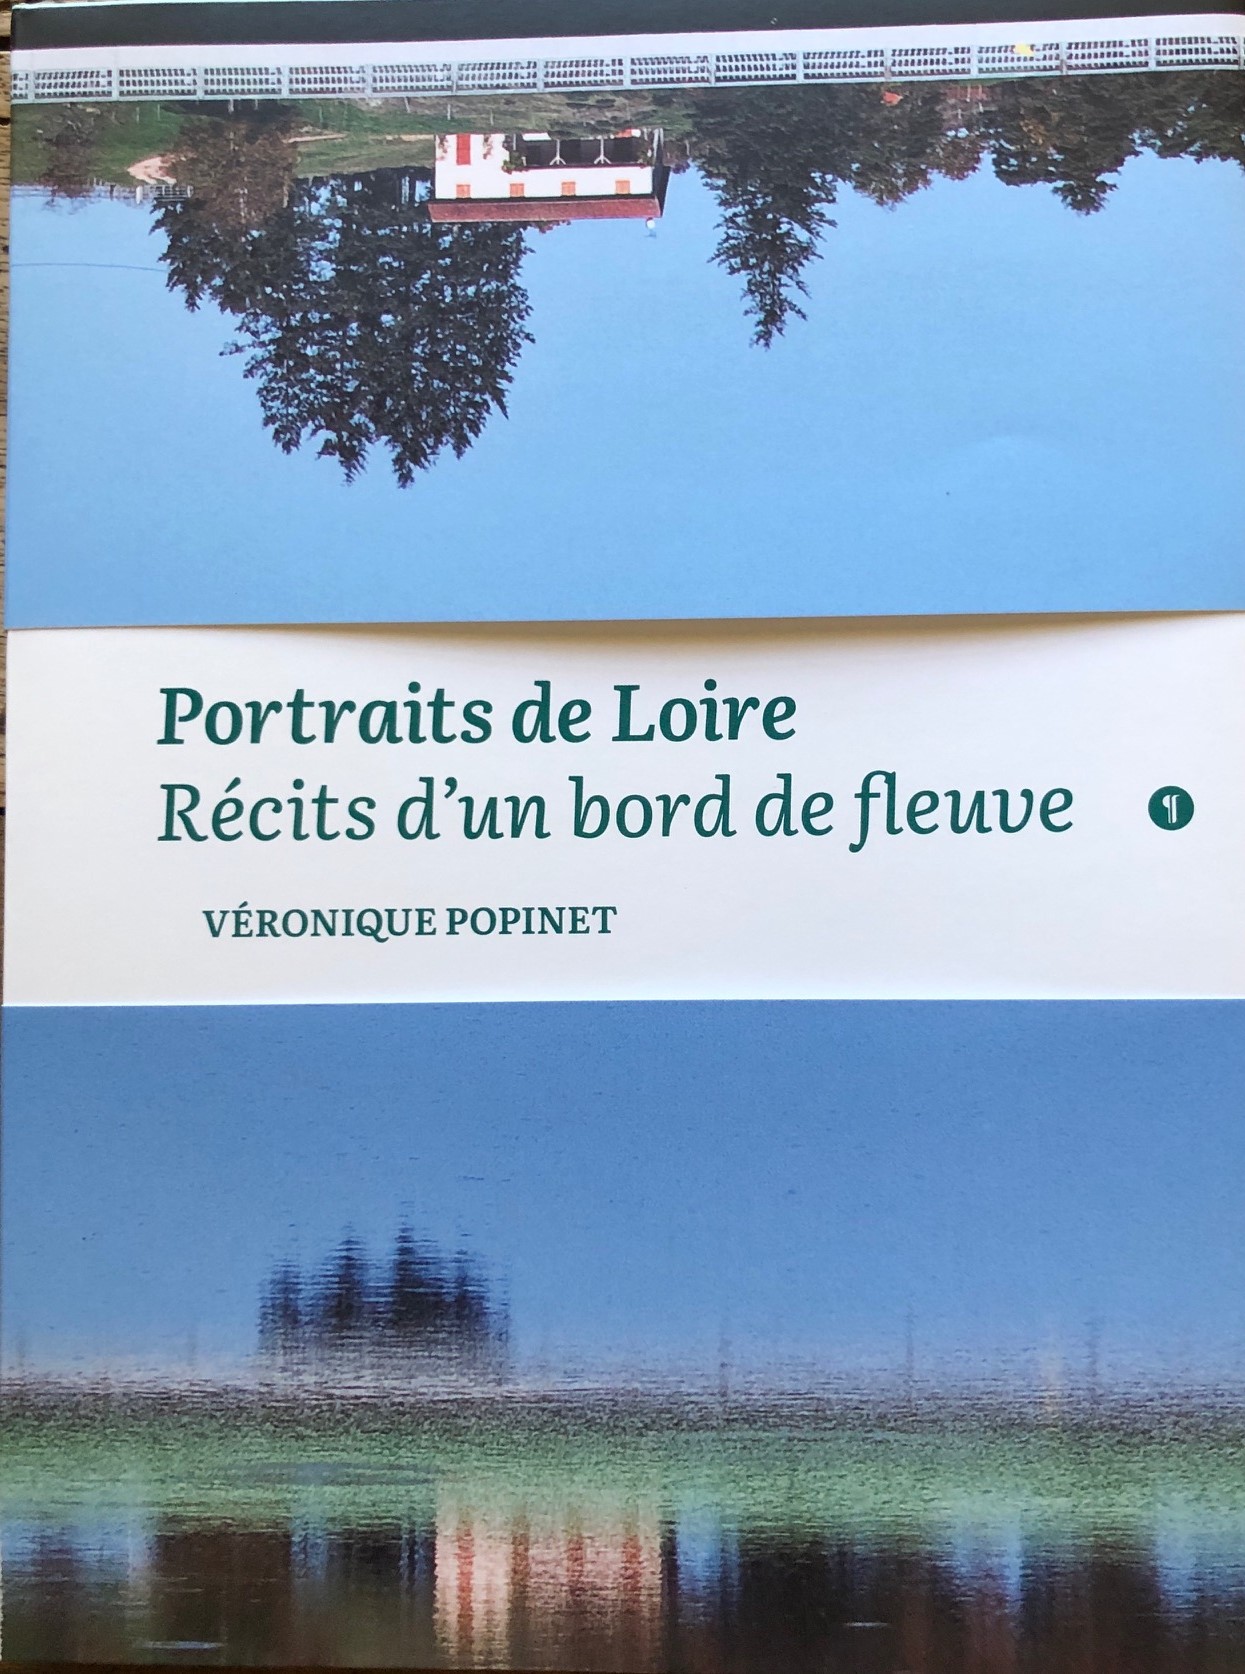 POPINET Portraits de Loire IMG_1287